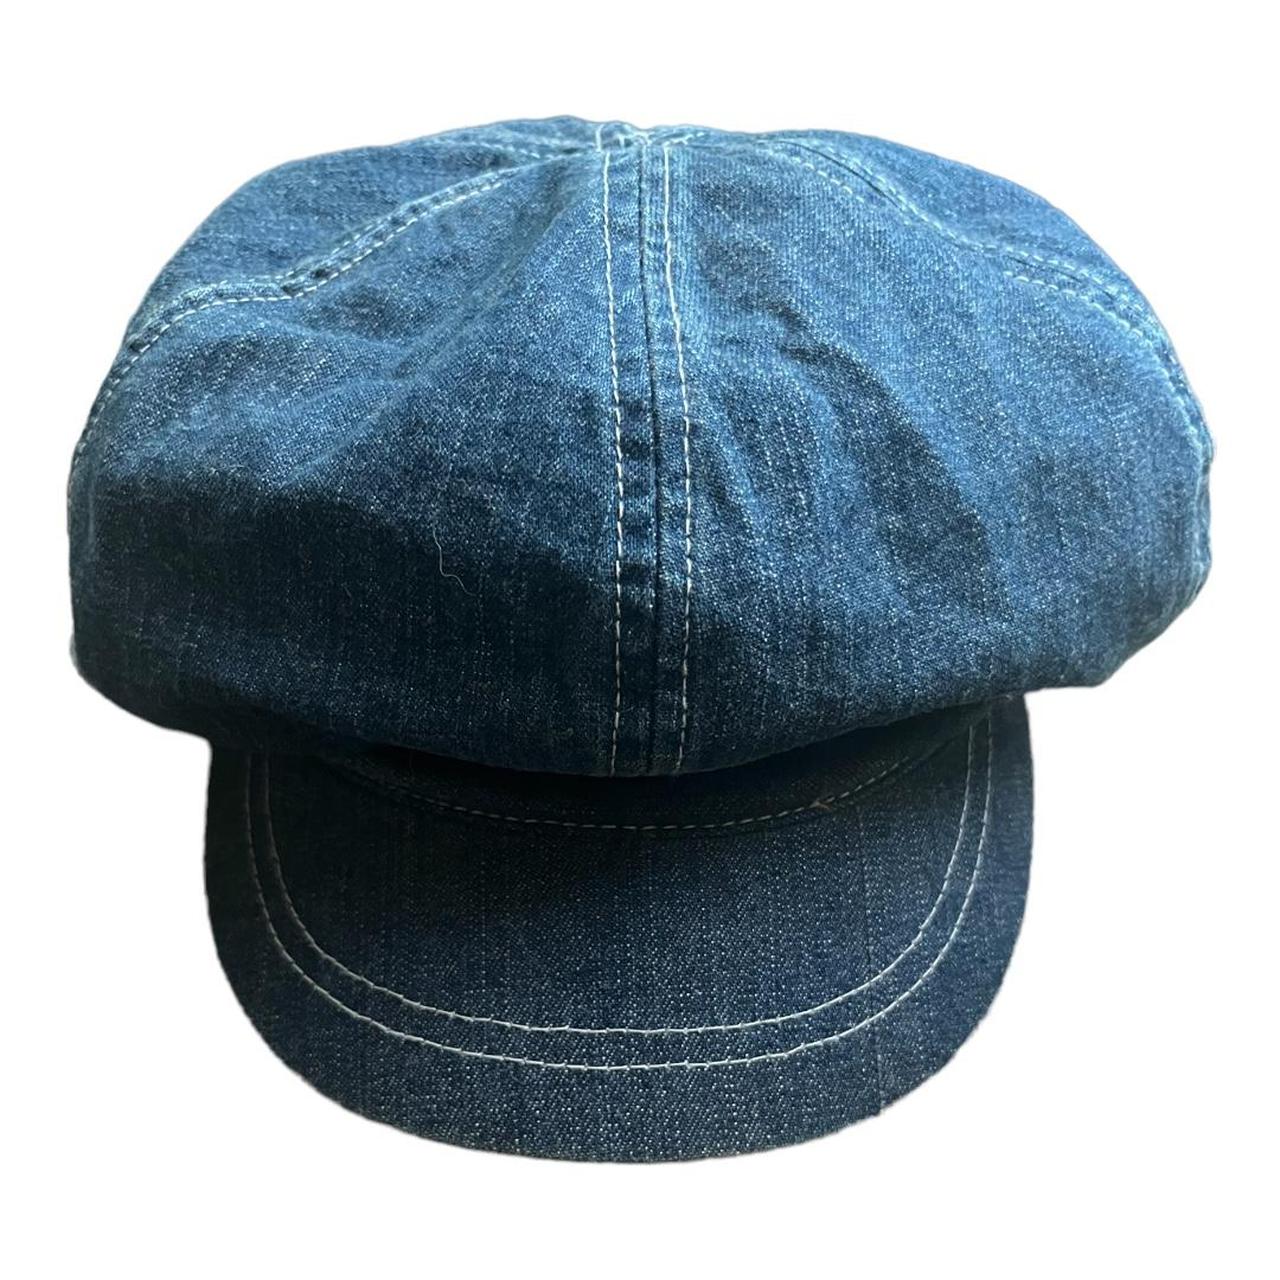 Vintage 90s Nine West Denim Newsboy Style Hat. On... - Depop